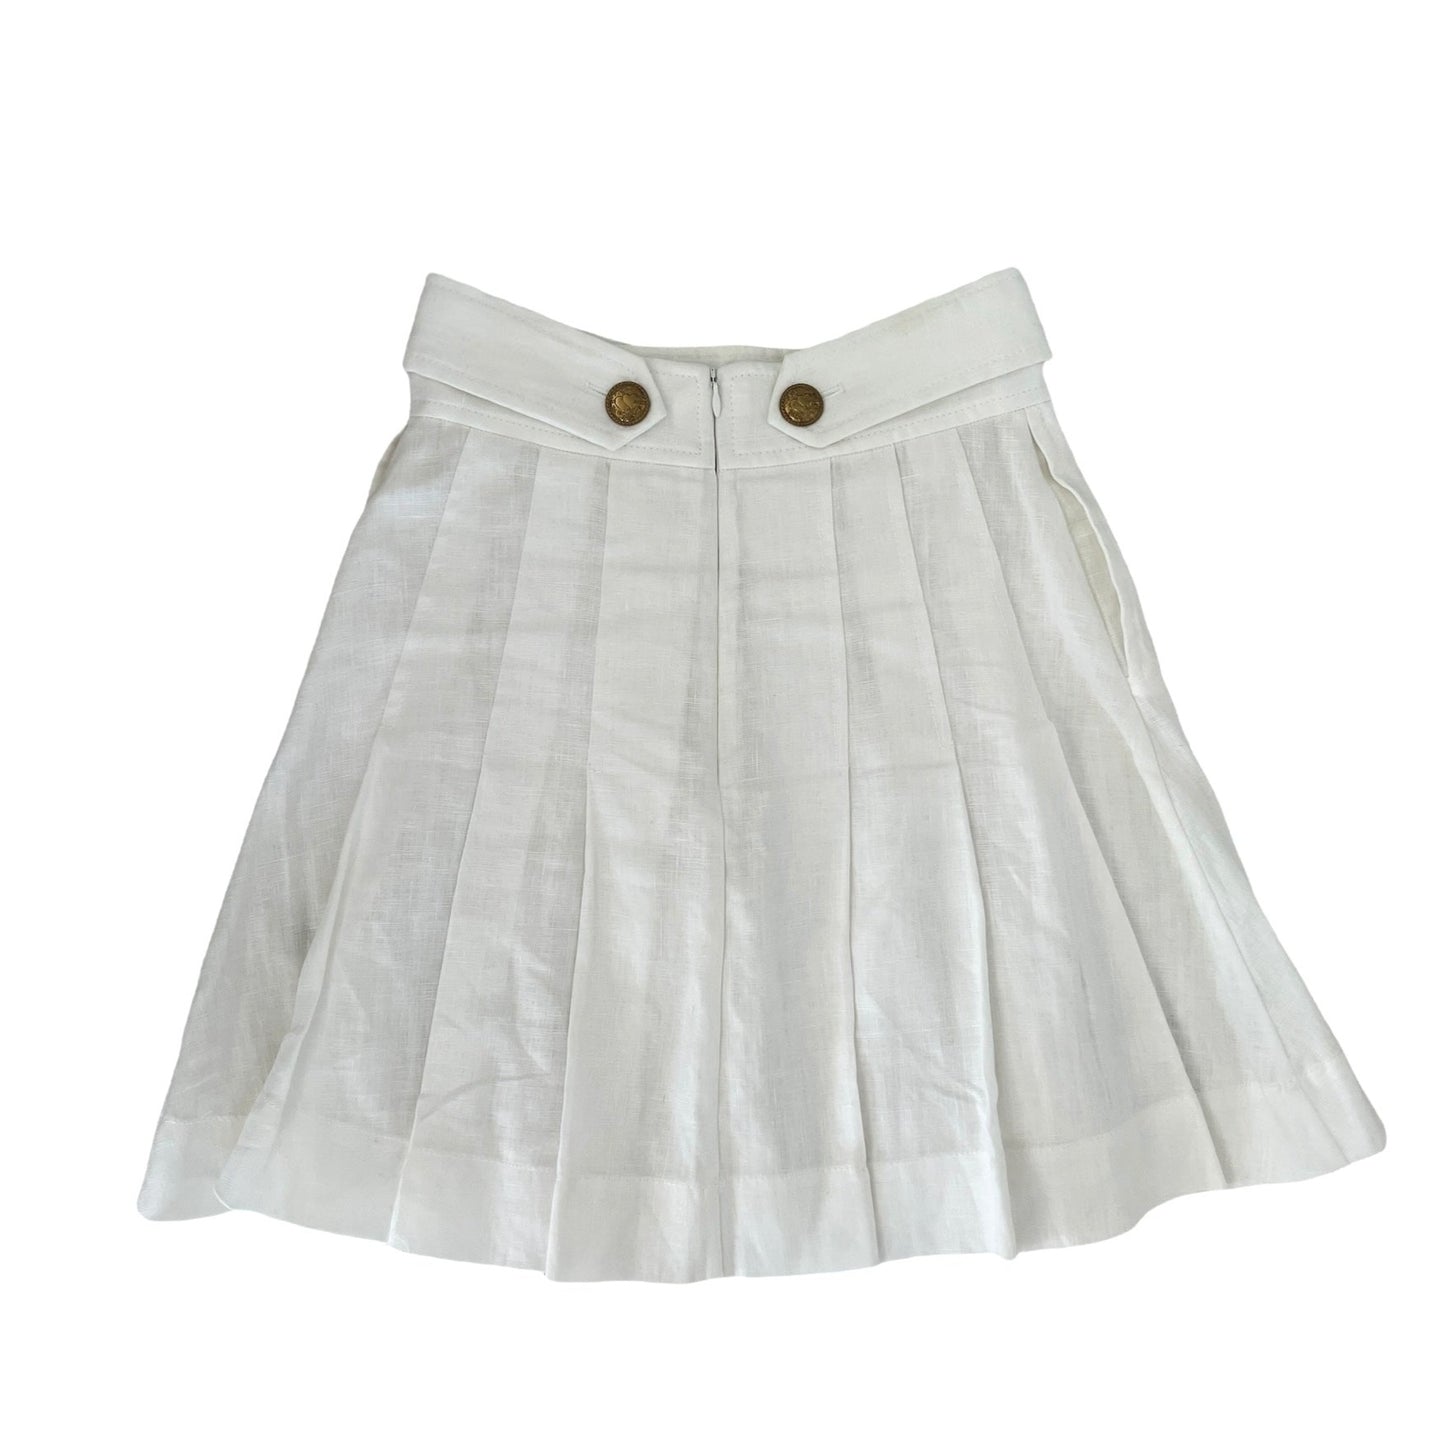 White Pleated Skirt - 0